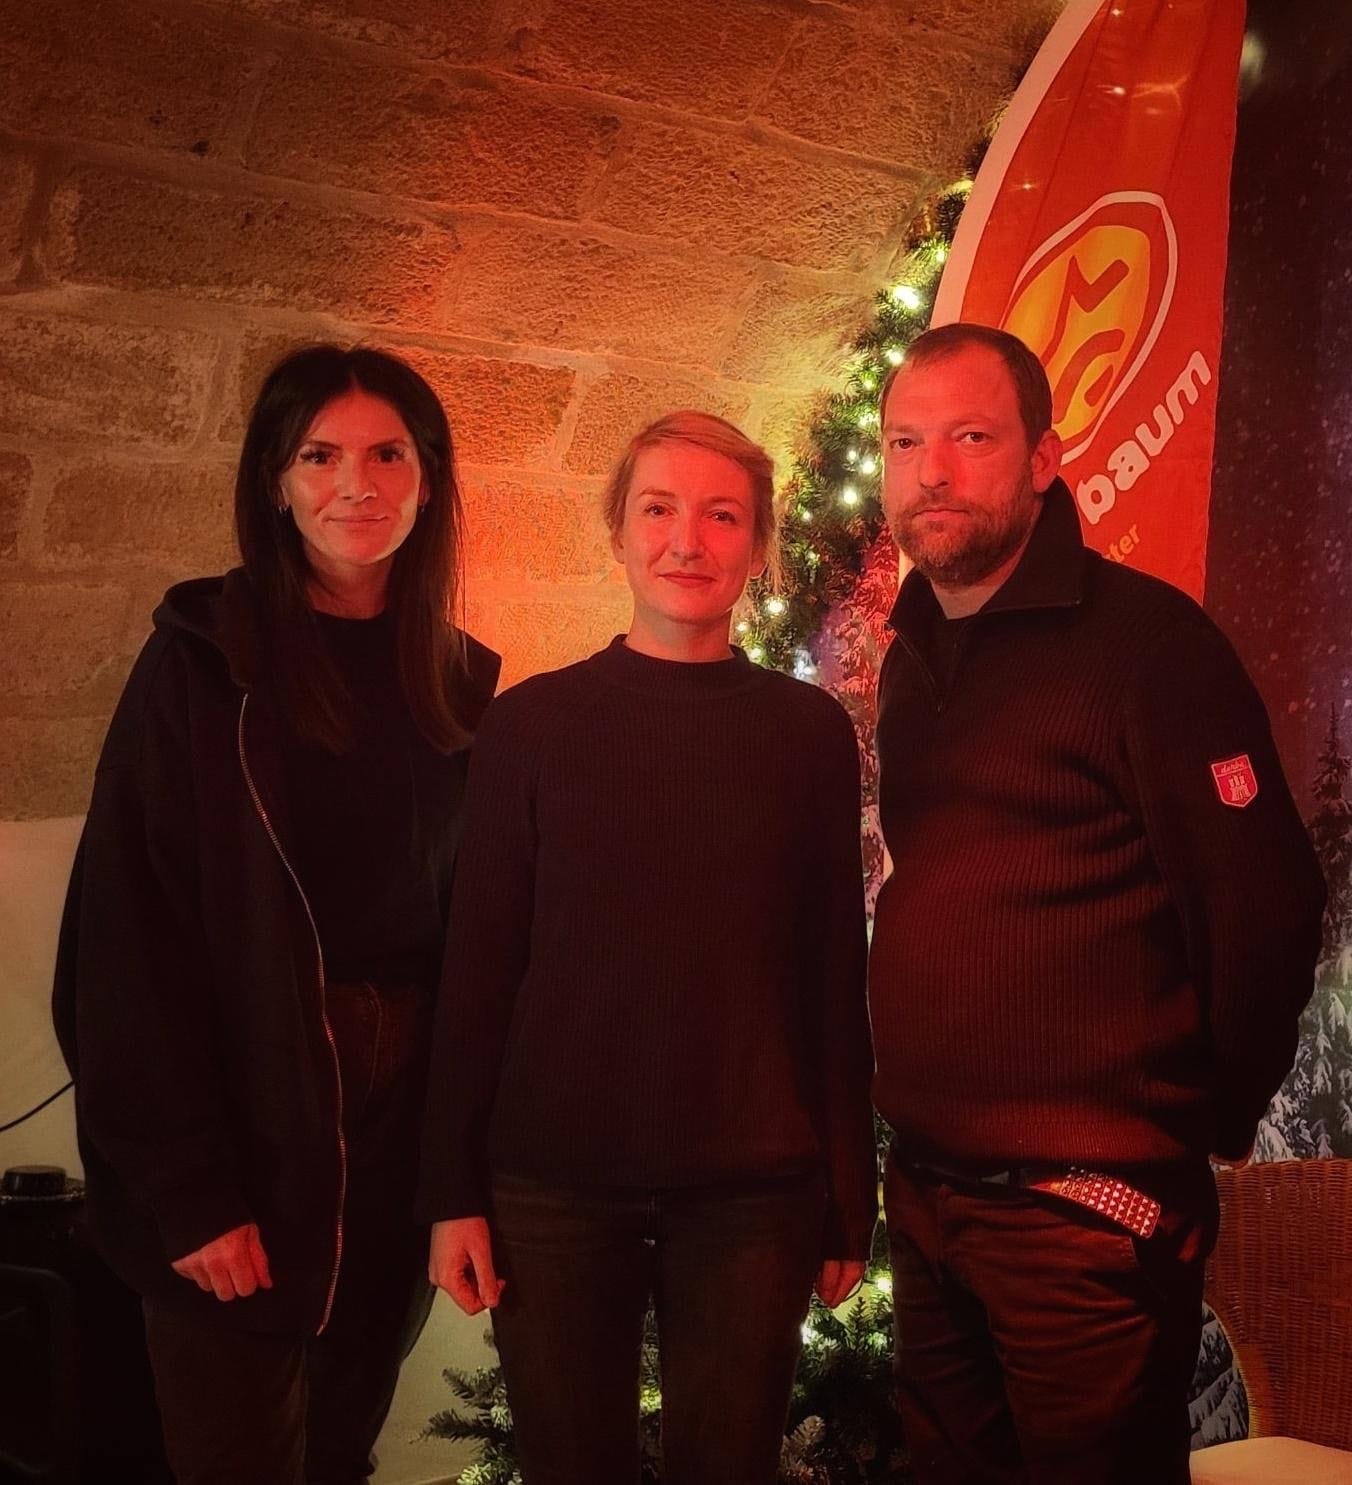 Zu Besuch in Pirna: Die Kreisvorsitzende Lisa Steiner, Rocco Malinka vom Roten Baum e.V. und ich nach einer Veranstaltung am 7. Dezember